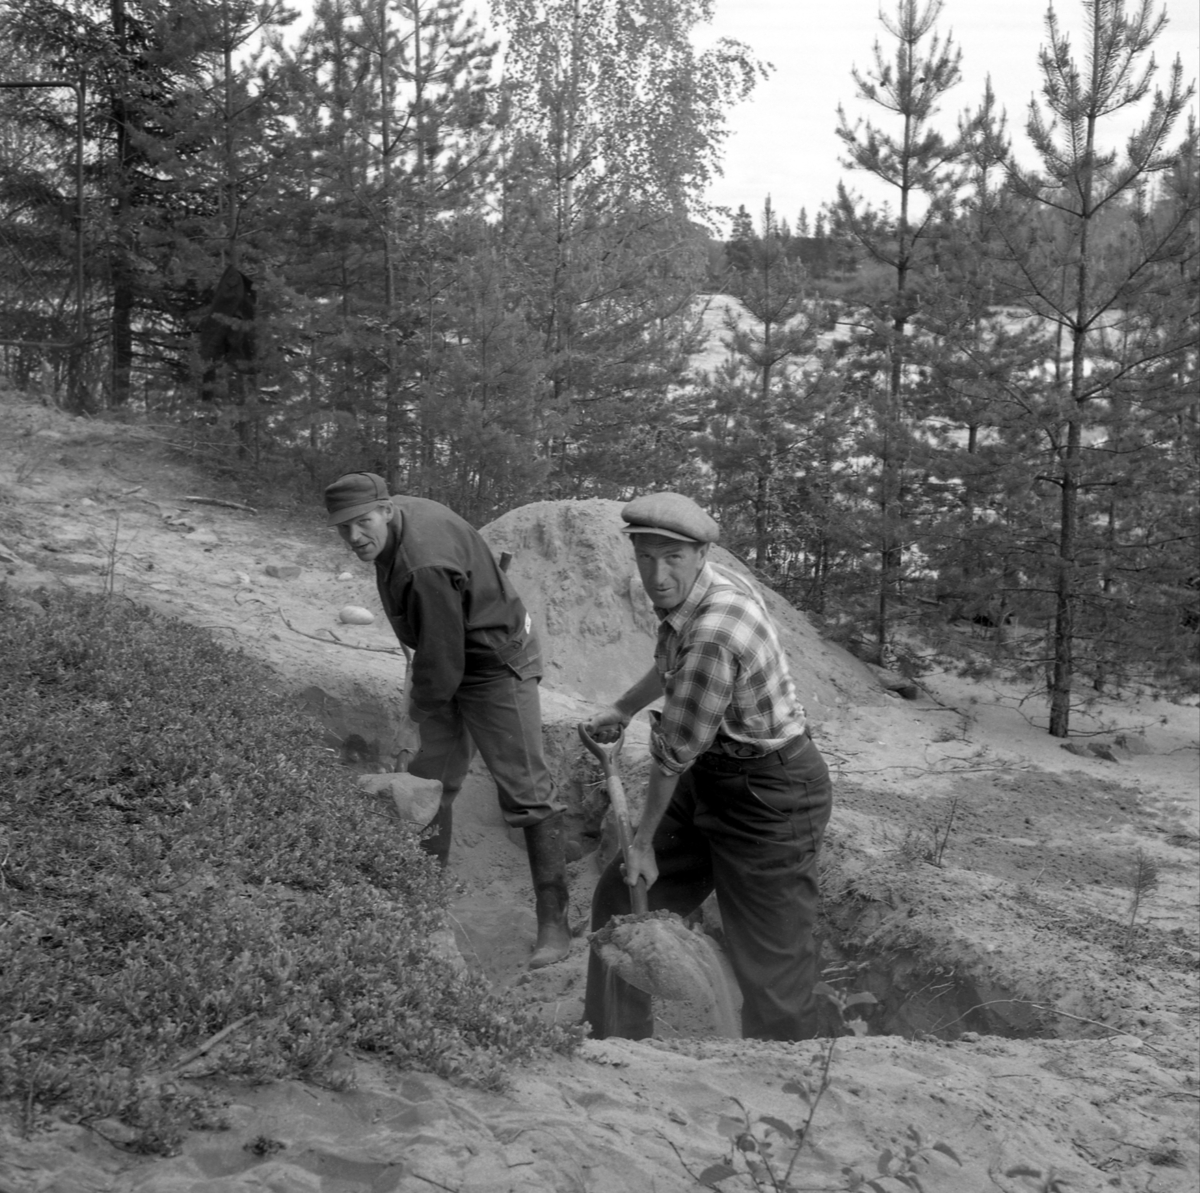 Bygging av hengebrua over Prestfossen mellom Glomdalsmuseet og Prestøya.
Gravearbeid, to menn.
Det kostet kr.120000 for å bygge 130 meter lang hengebrua i 1958.